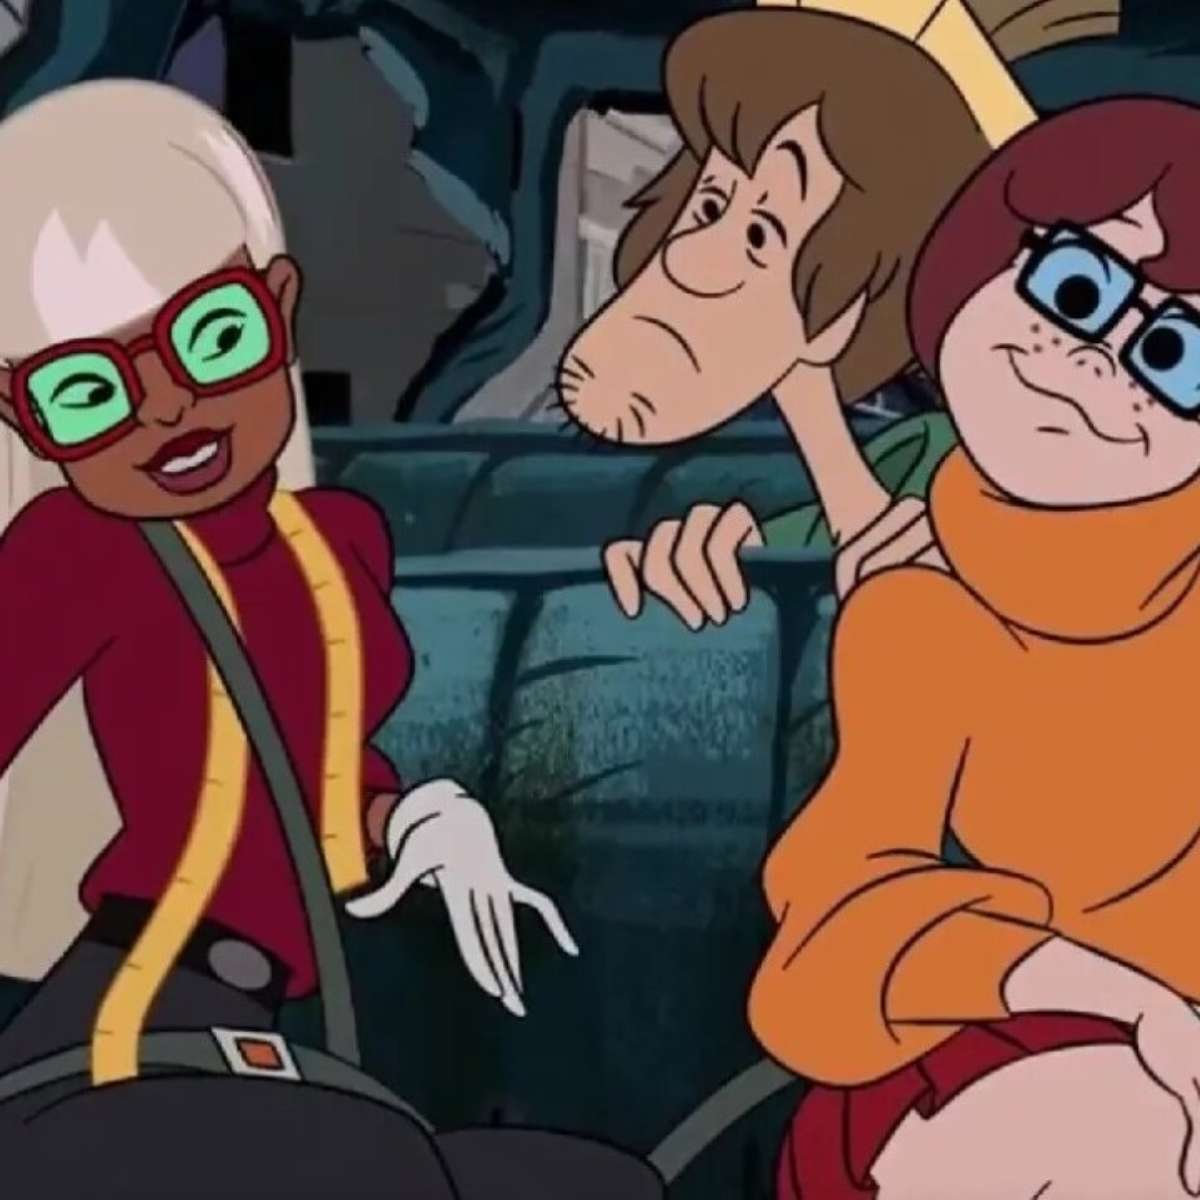 Velma, de Scooby-Doo, ganha surpresa na busca do Google - Terra -  Notícias Travestis